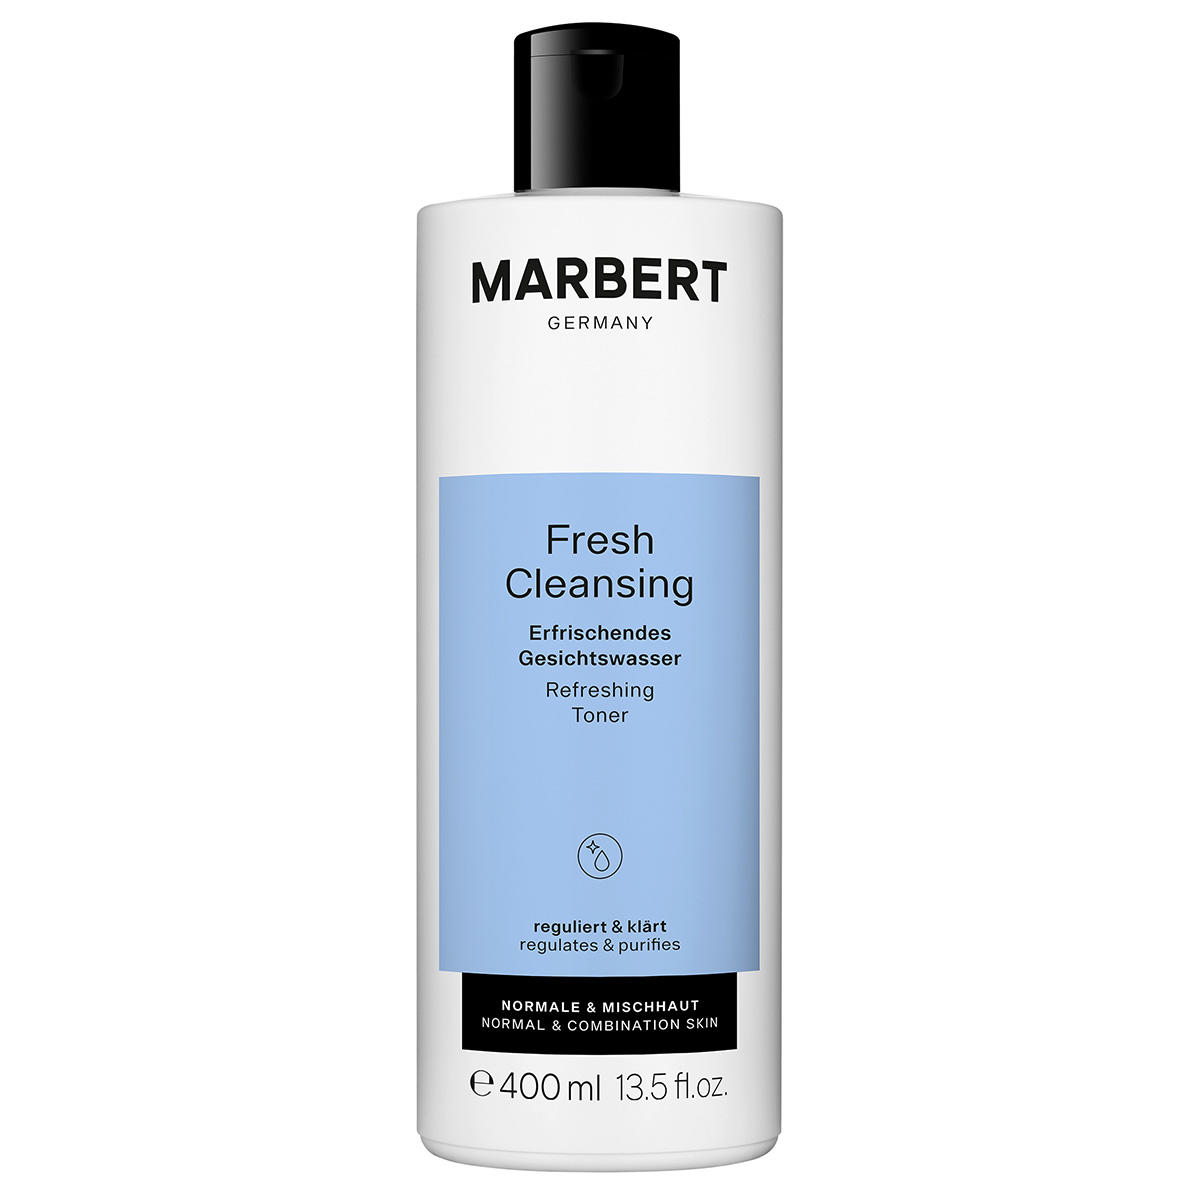 Marbert Fresh Cleansing Erfrischendes Gesichtswasser 400 ml - 1